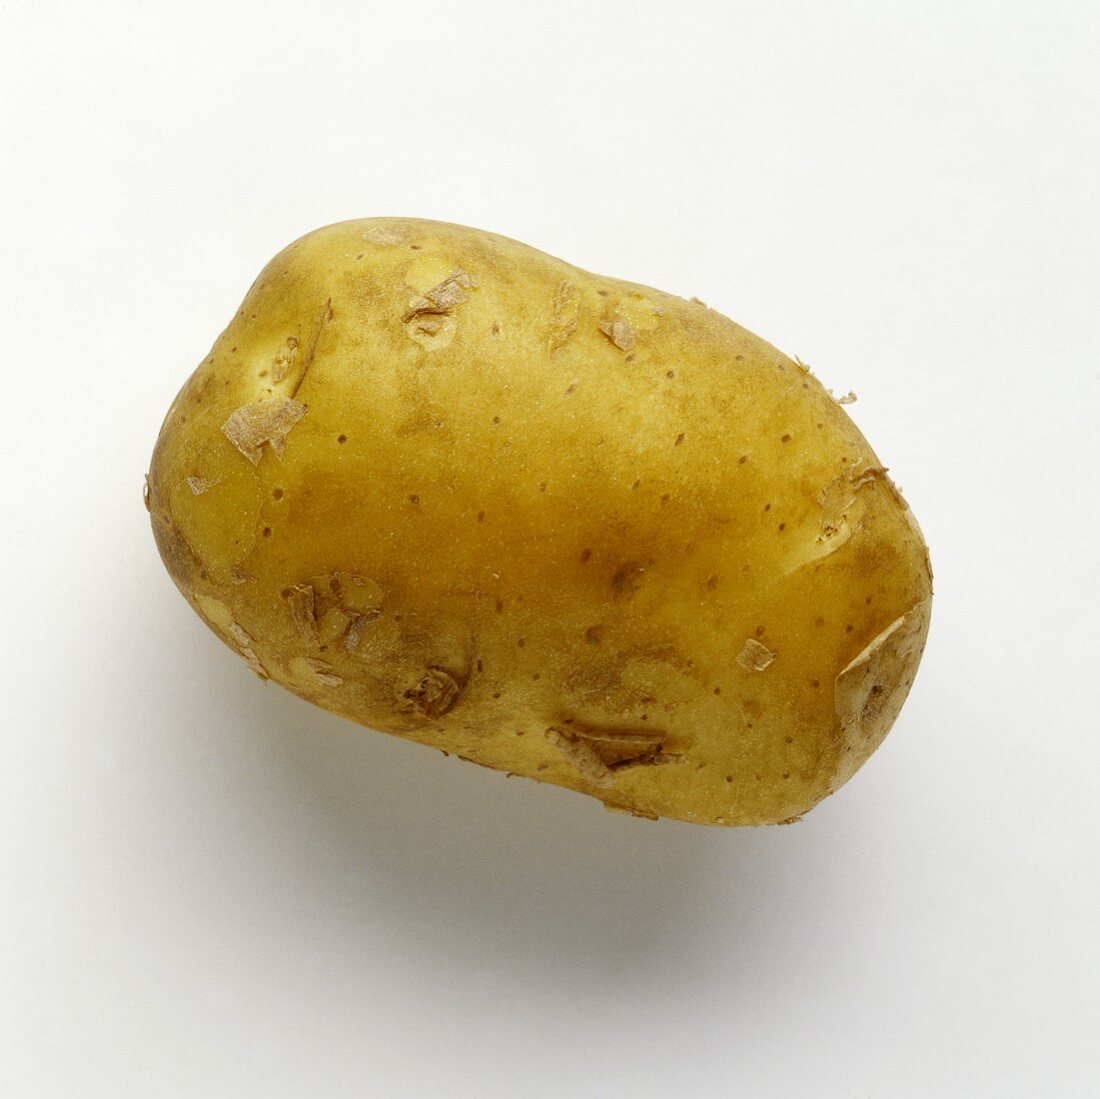 Eine Kartoffel (Sorte: Sigma)